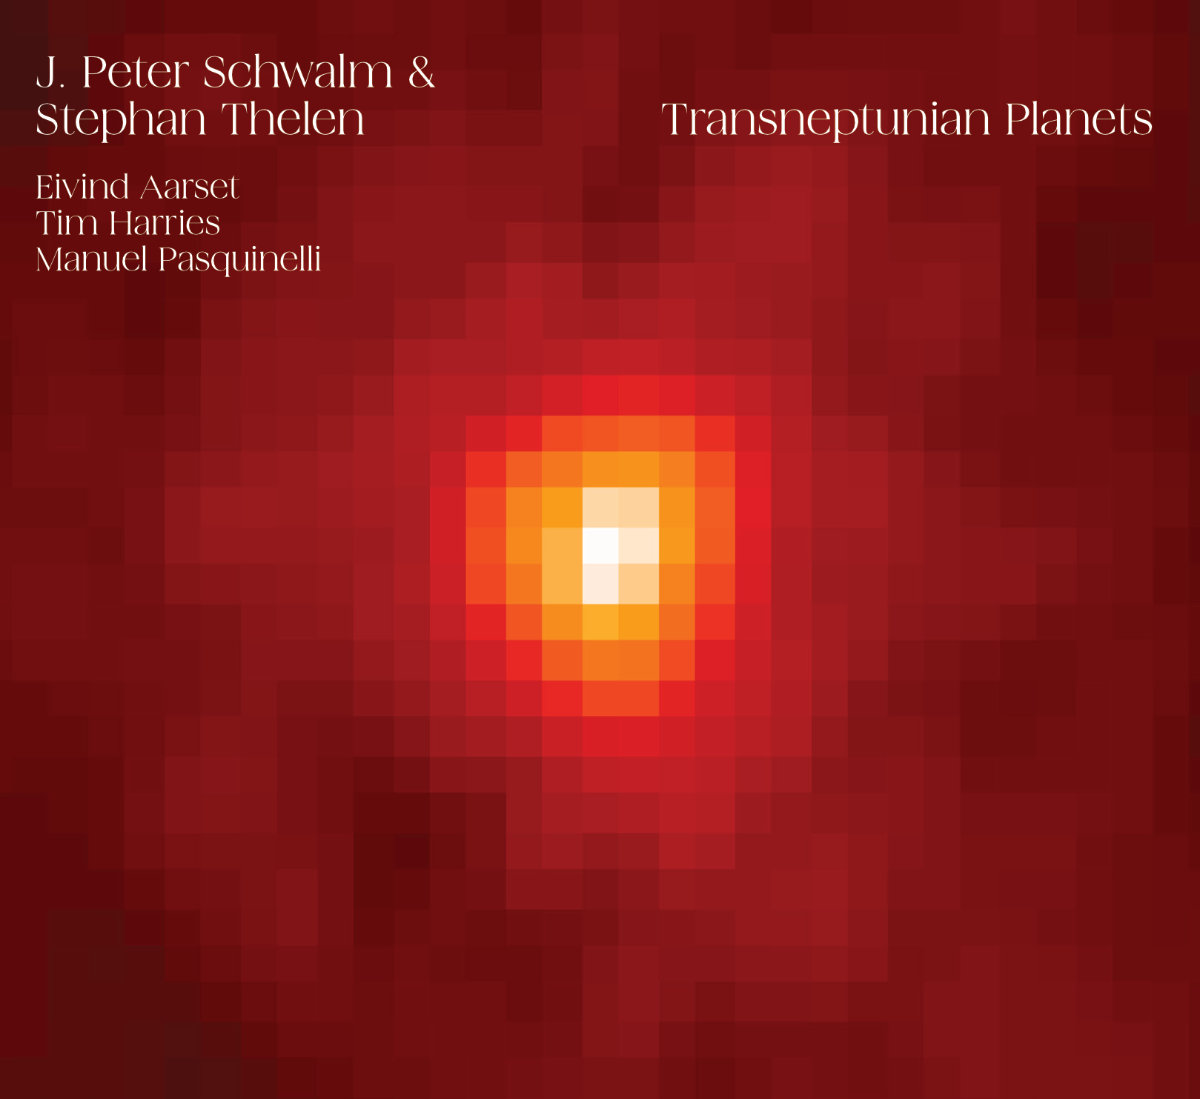 J. Peter Schwalm & Stephan Thelen: Transneptunian Planets